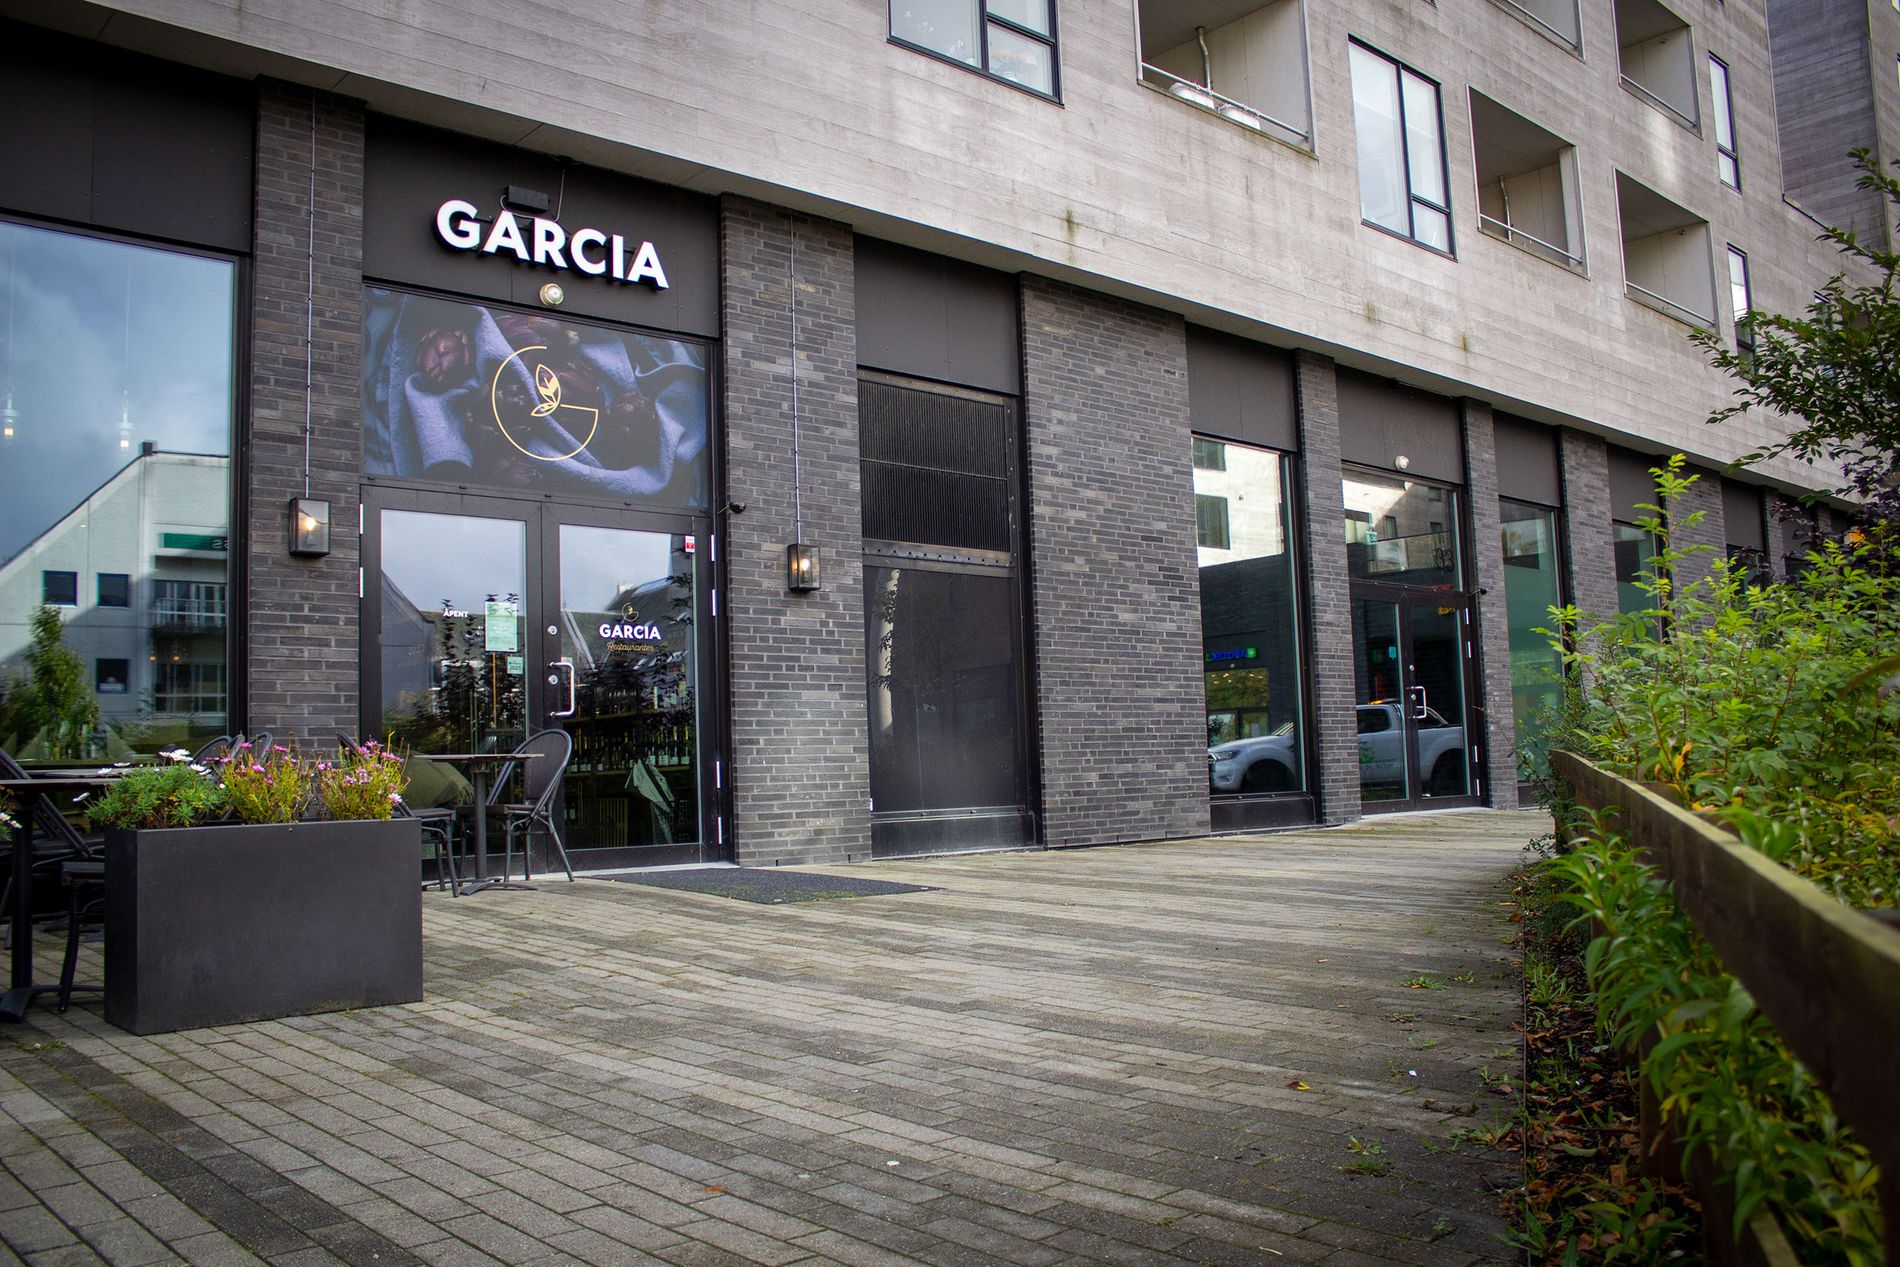 Garcia får to innganger, en til restauranten og en annen til baren. På innsiden kan du bevege deg fritt mellom lokalene. 